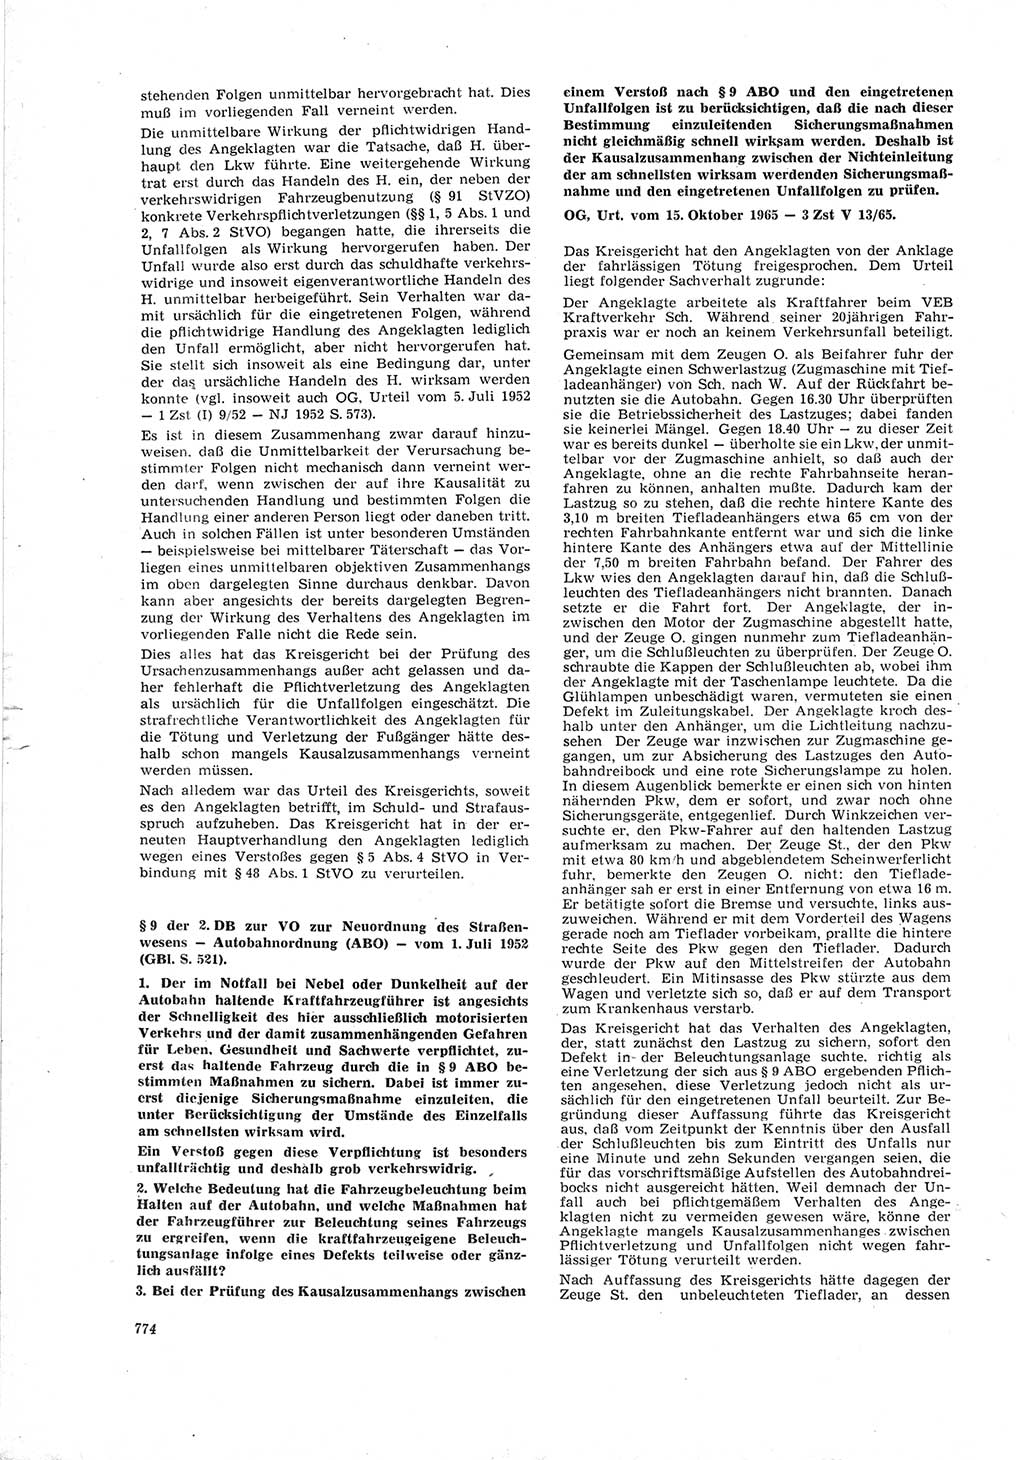 Neue Justiz (NJ), Zeitschrift für Recht und Rechtswissenschaft [Deutsche Demokratische Republik (DDR)], 19. Jahrgang 1965, Seite 774 (NJ DDR 1965, S. 774)